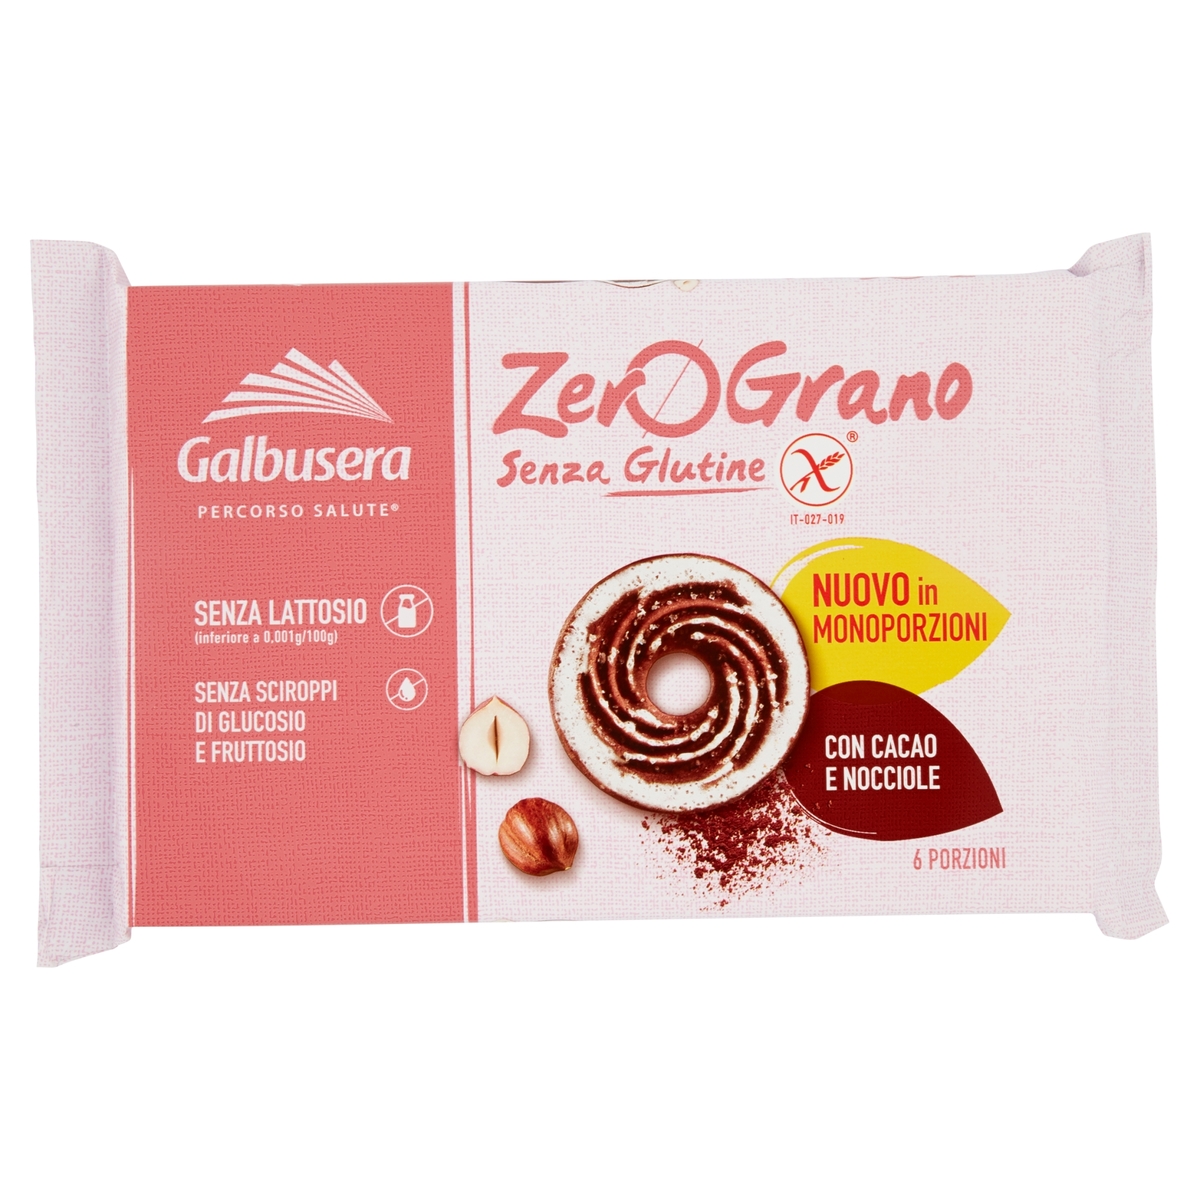 Image of Zerograno Cacao Nocciola Senza Glutine 220g